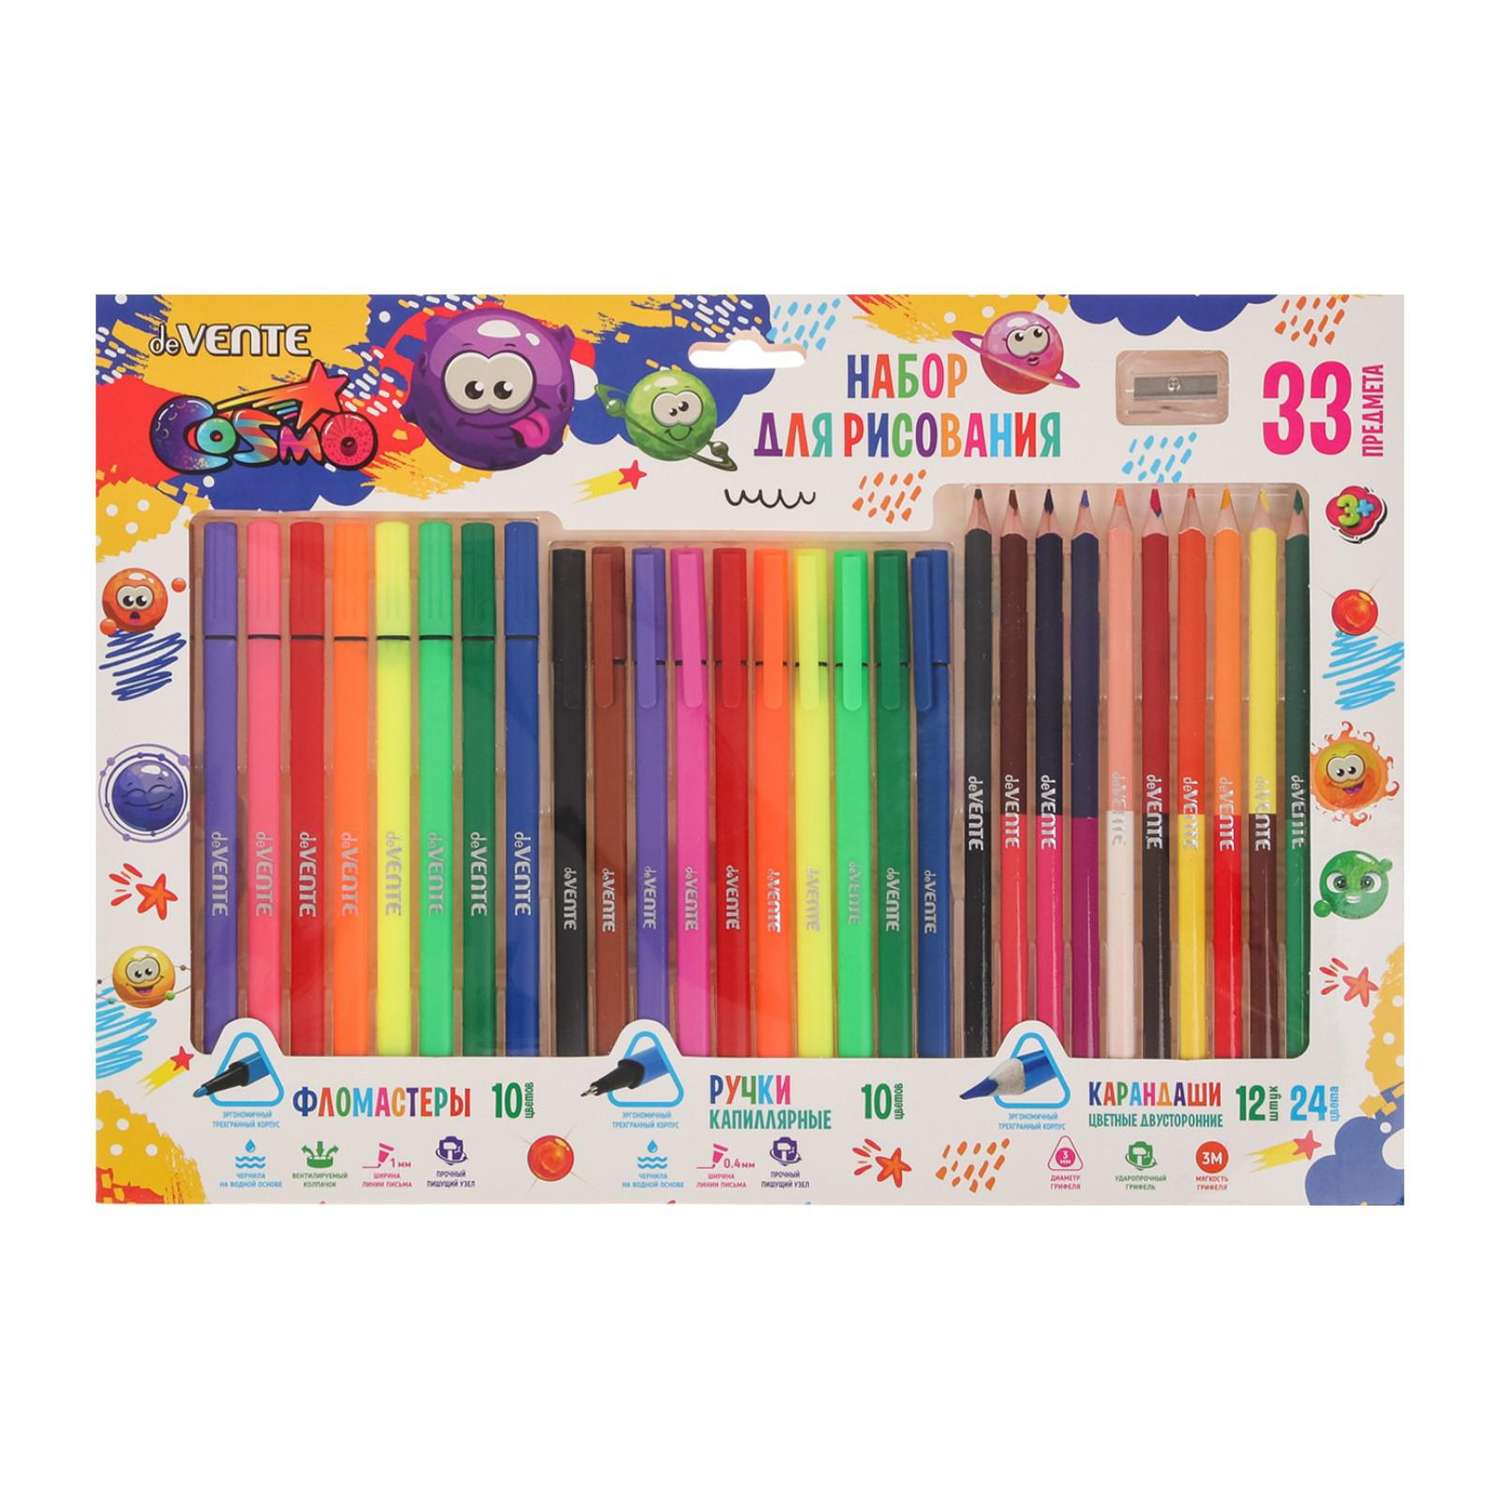 Набор Эврики для рисования подарочный 33 предмета: фломастеры ручки карандаши цветные точилка - фото 1